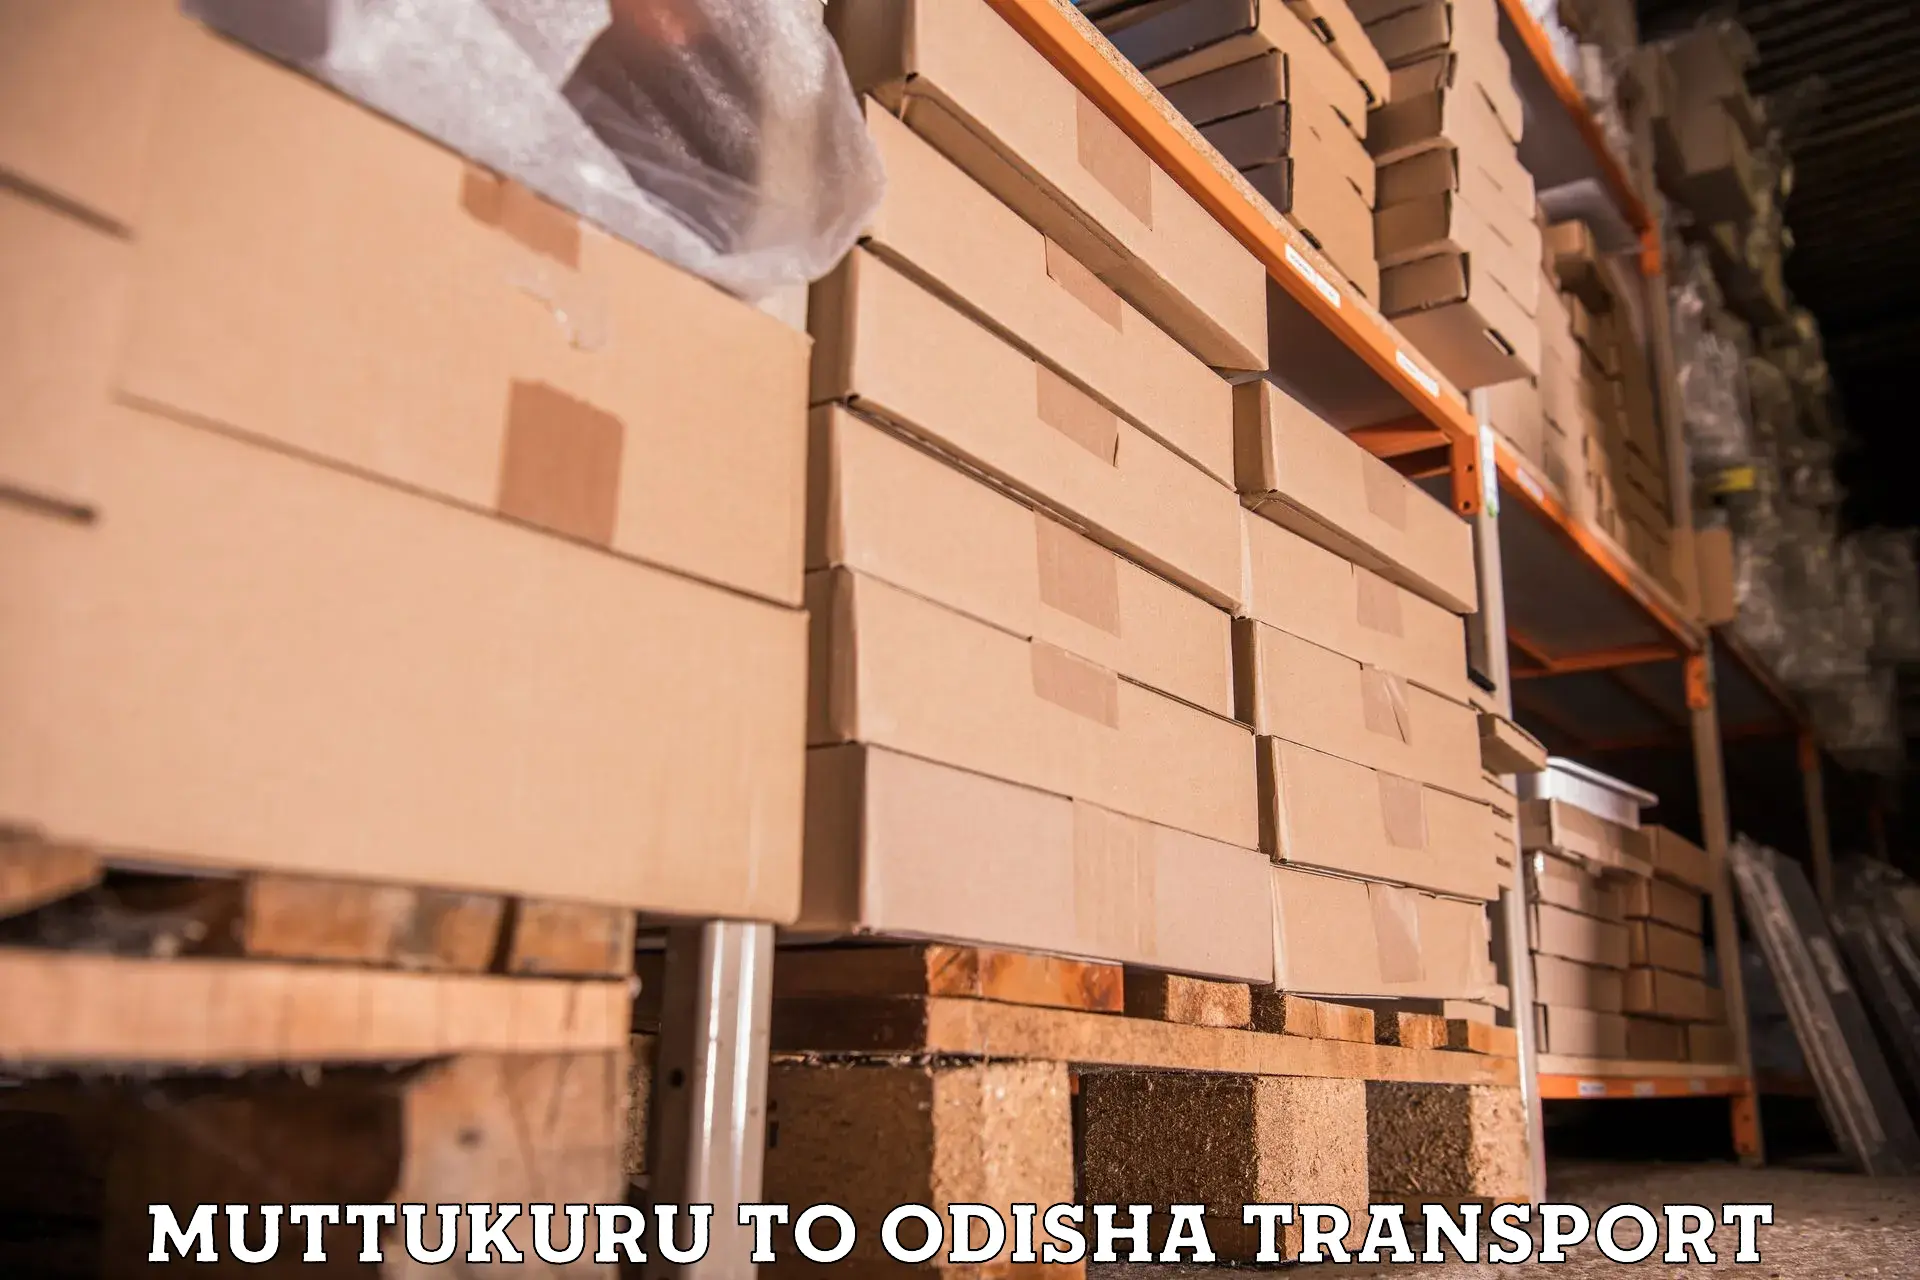 Furniture transport service in Muttukuru to Daspalla